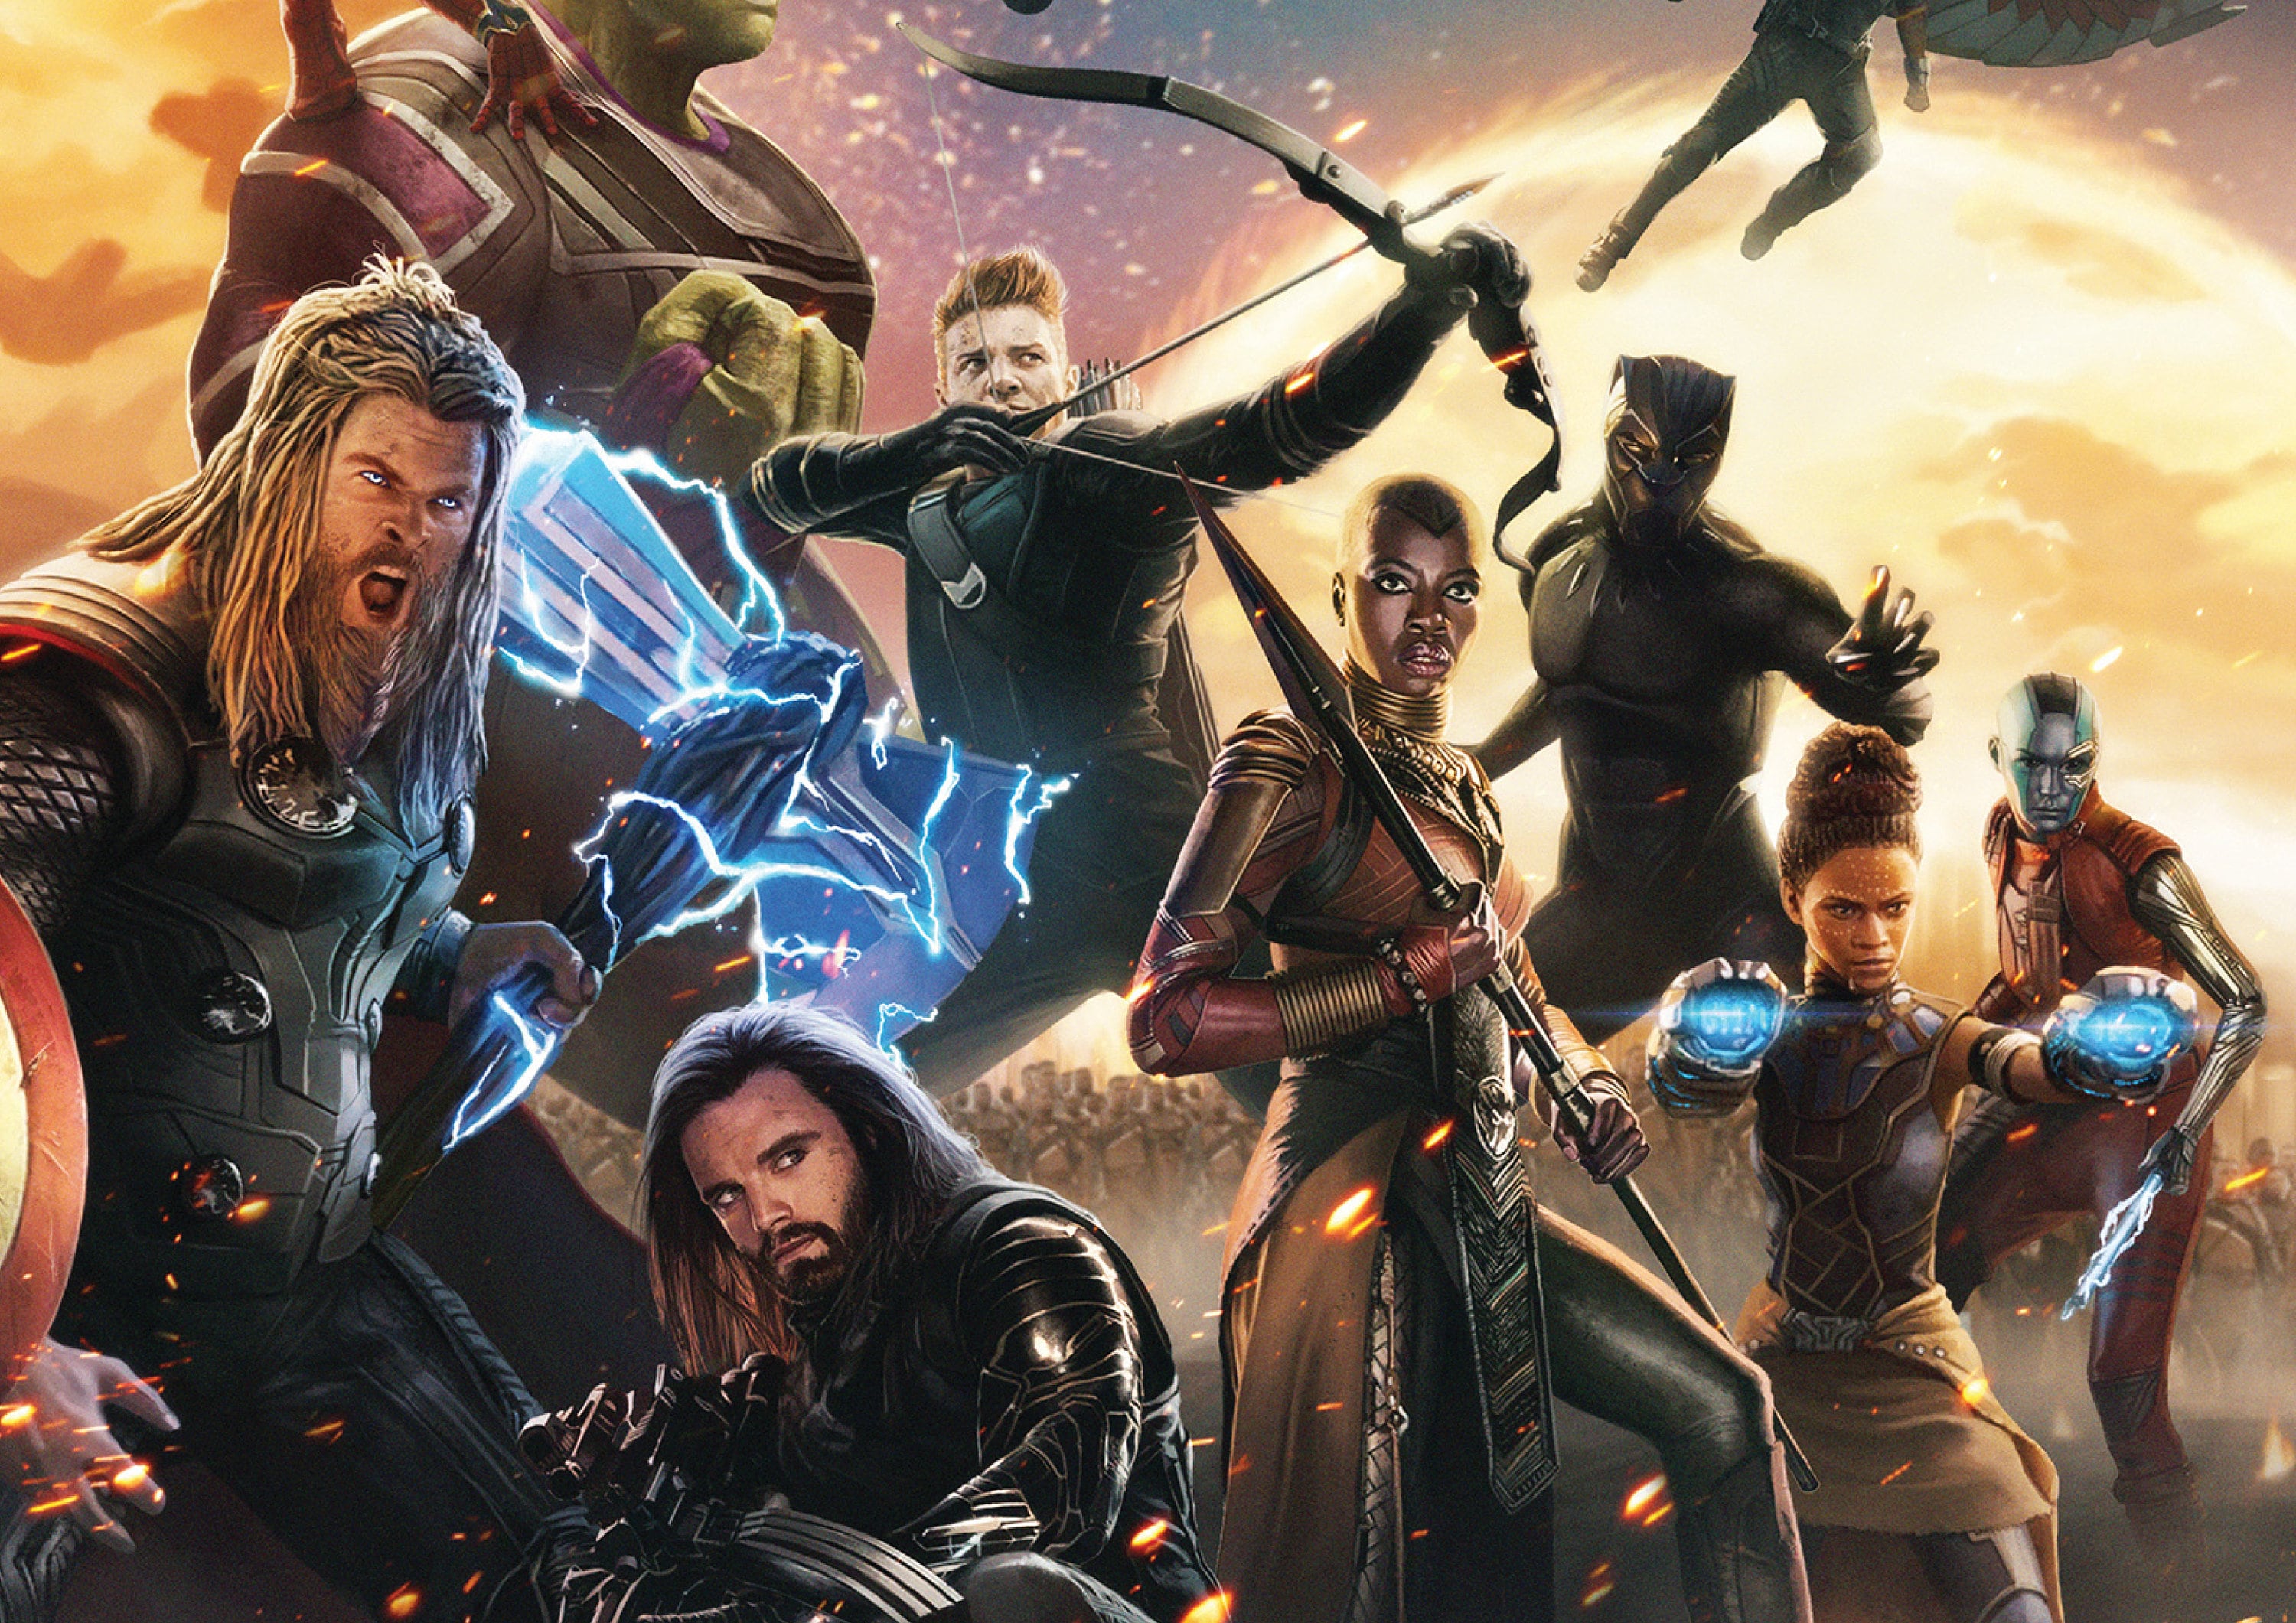 Marvel Avengers Assemble Poster Print - Item # VARTIARP5894